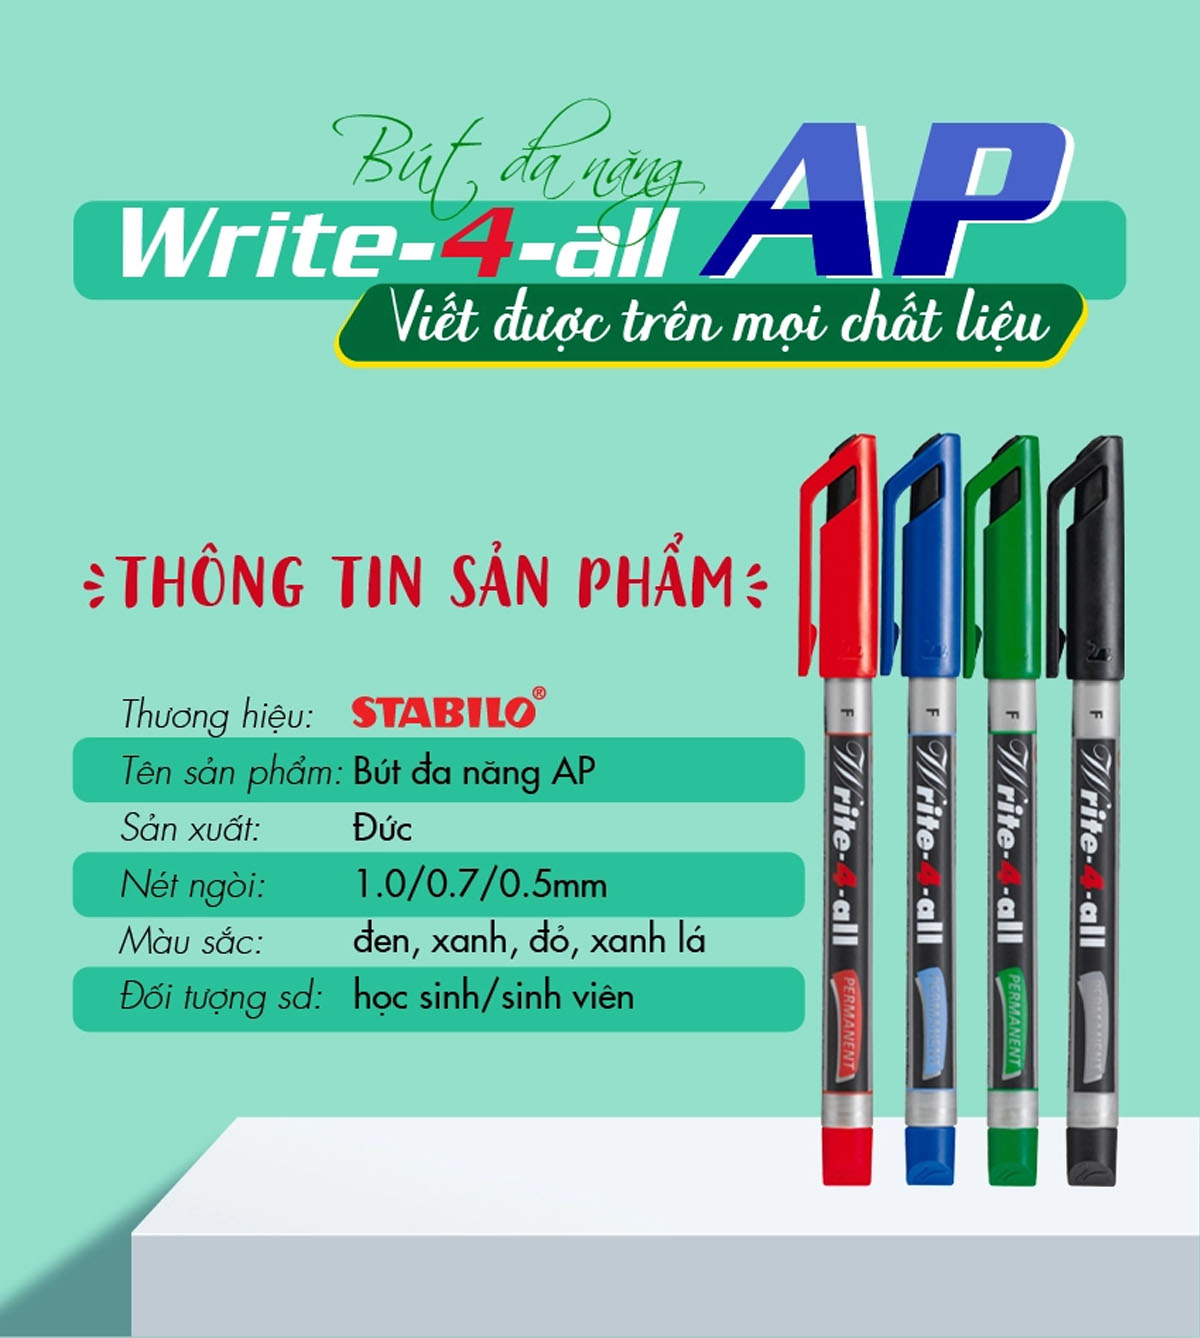 Bộ 4 Bút kỹ thuật STABILO Write-4-all PERMANENT xanh + đen + đỏ + xanh lá (AP-C4)